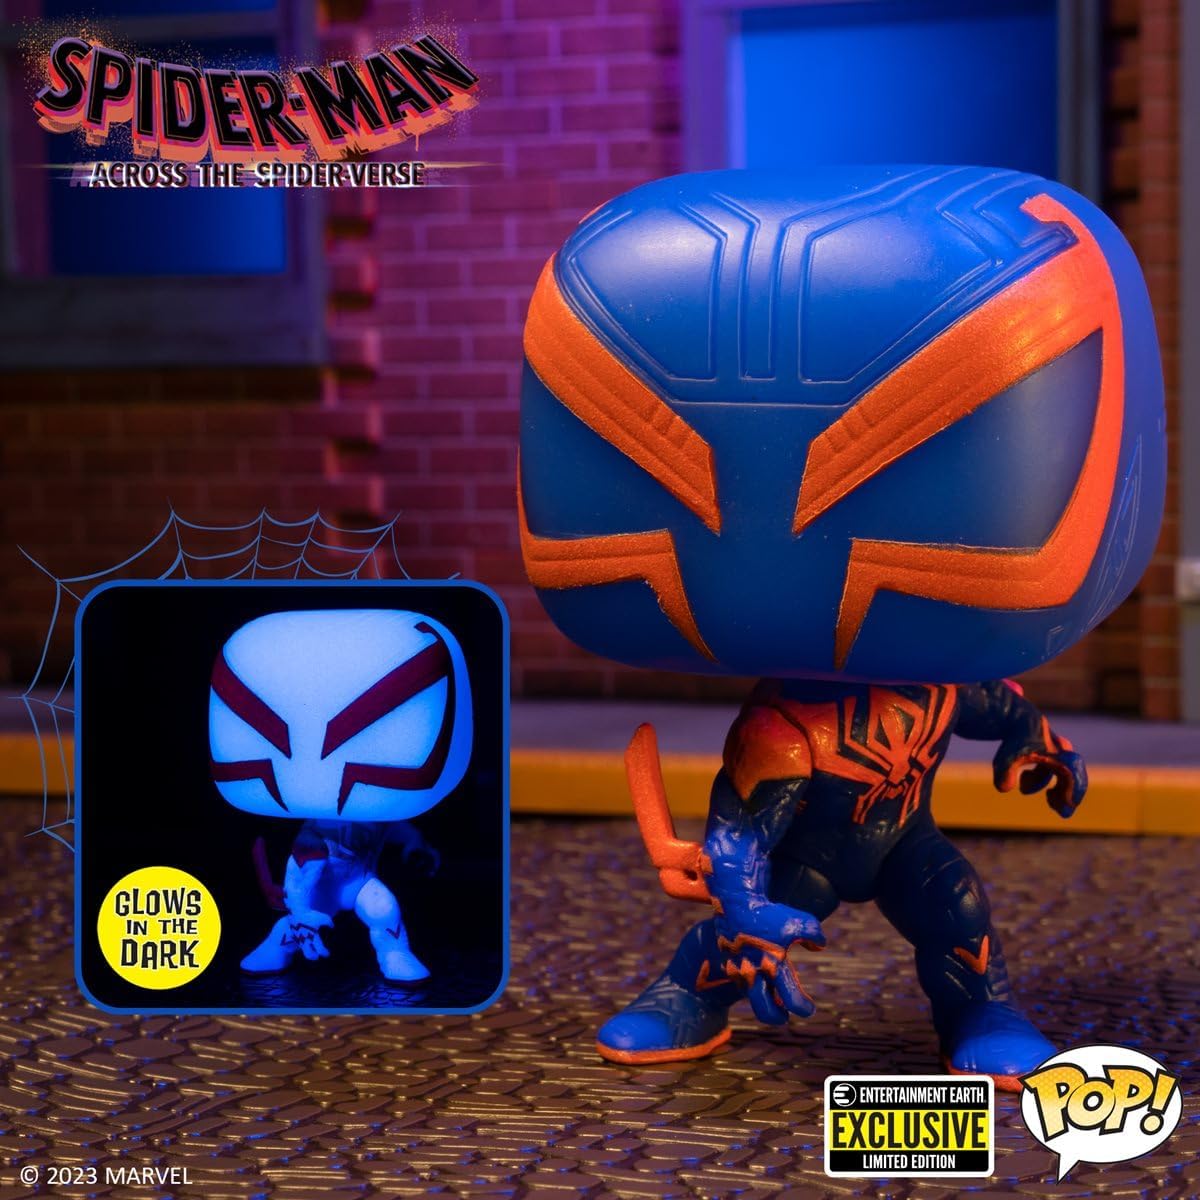 Funko Pop! Spider-Man Across the Spider-verse: Spider-Man 2099 (EE)